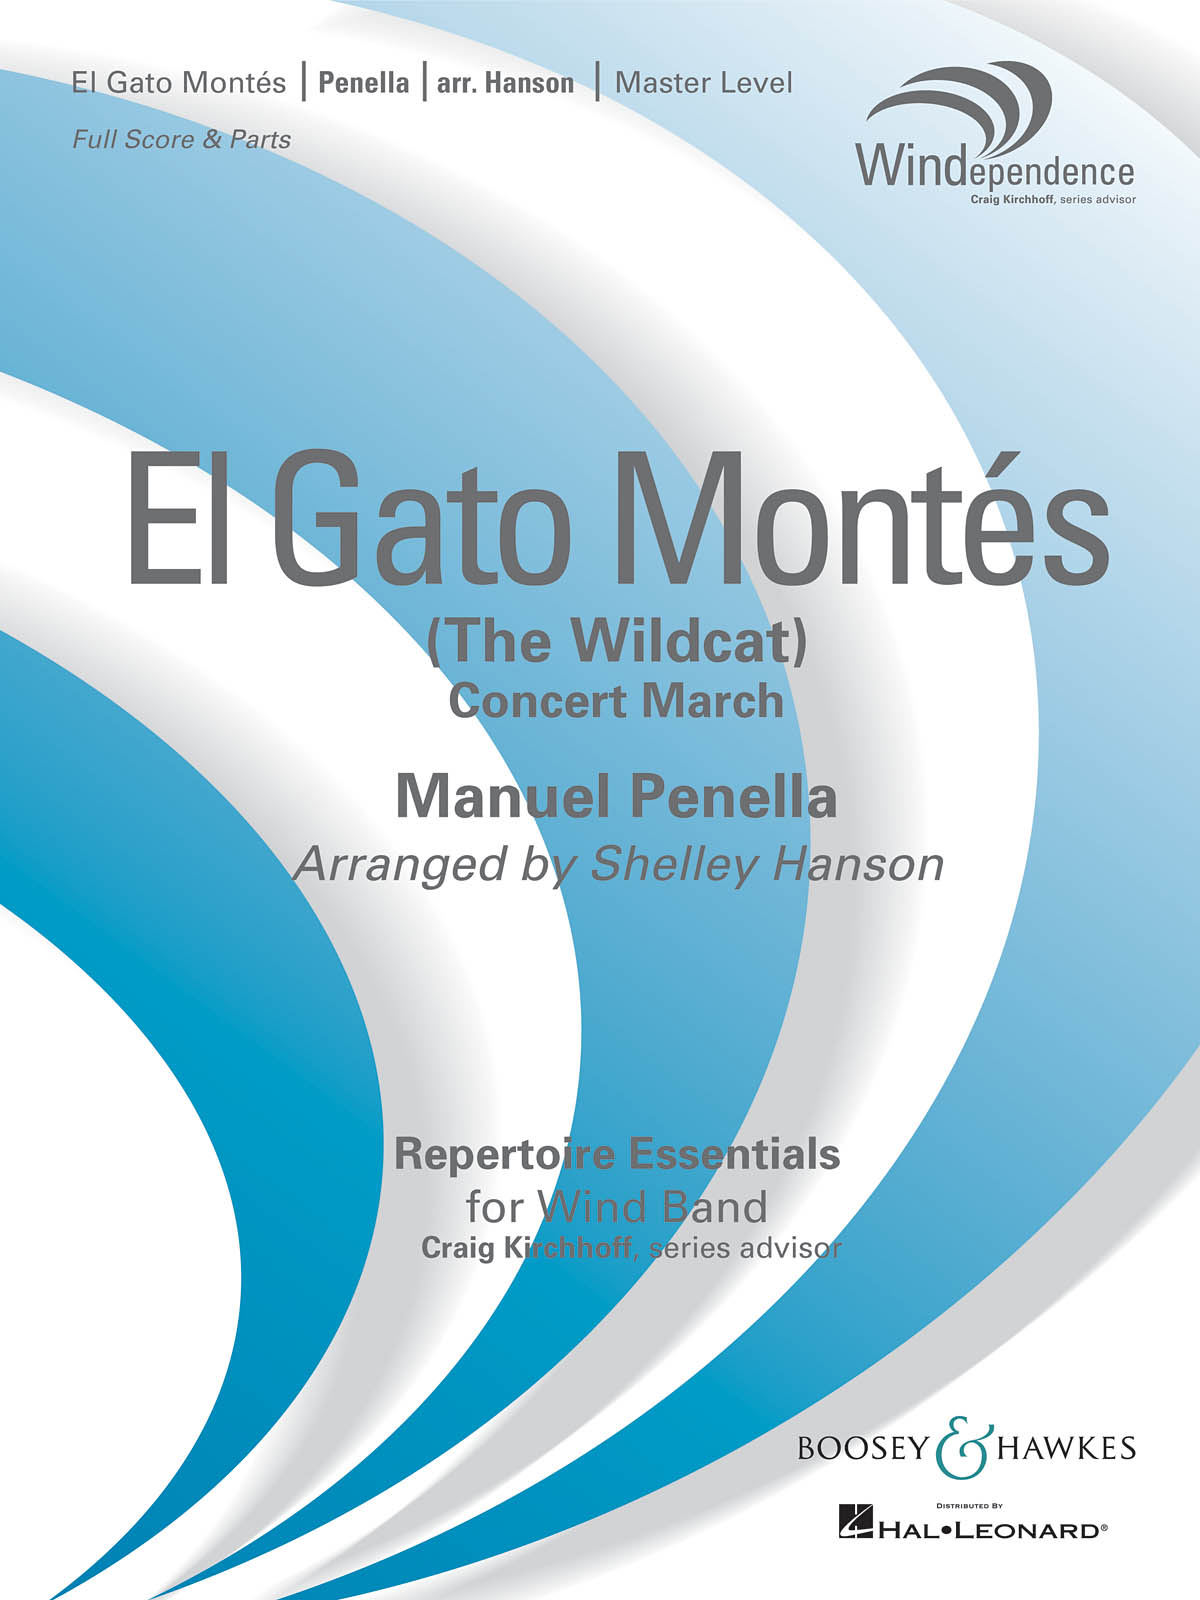 El Gato Montés (The Wild Cat)